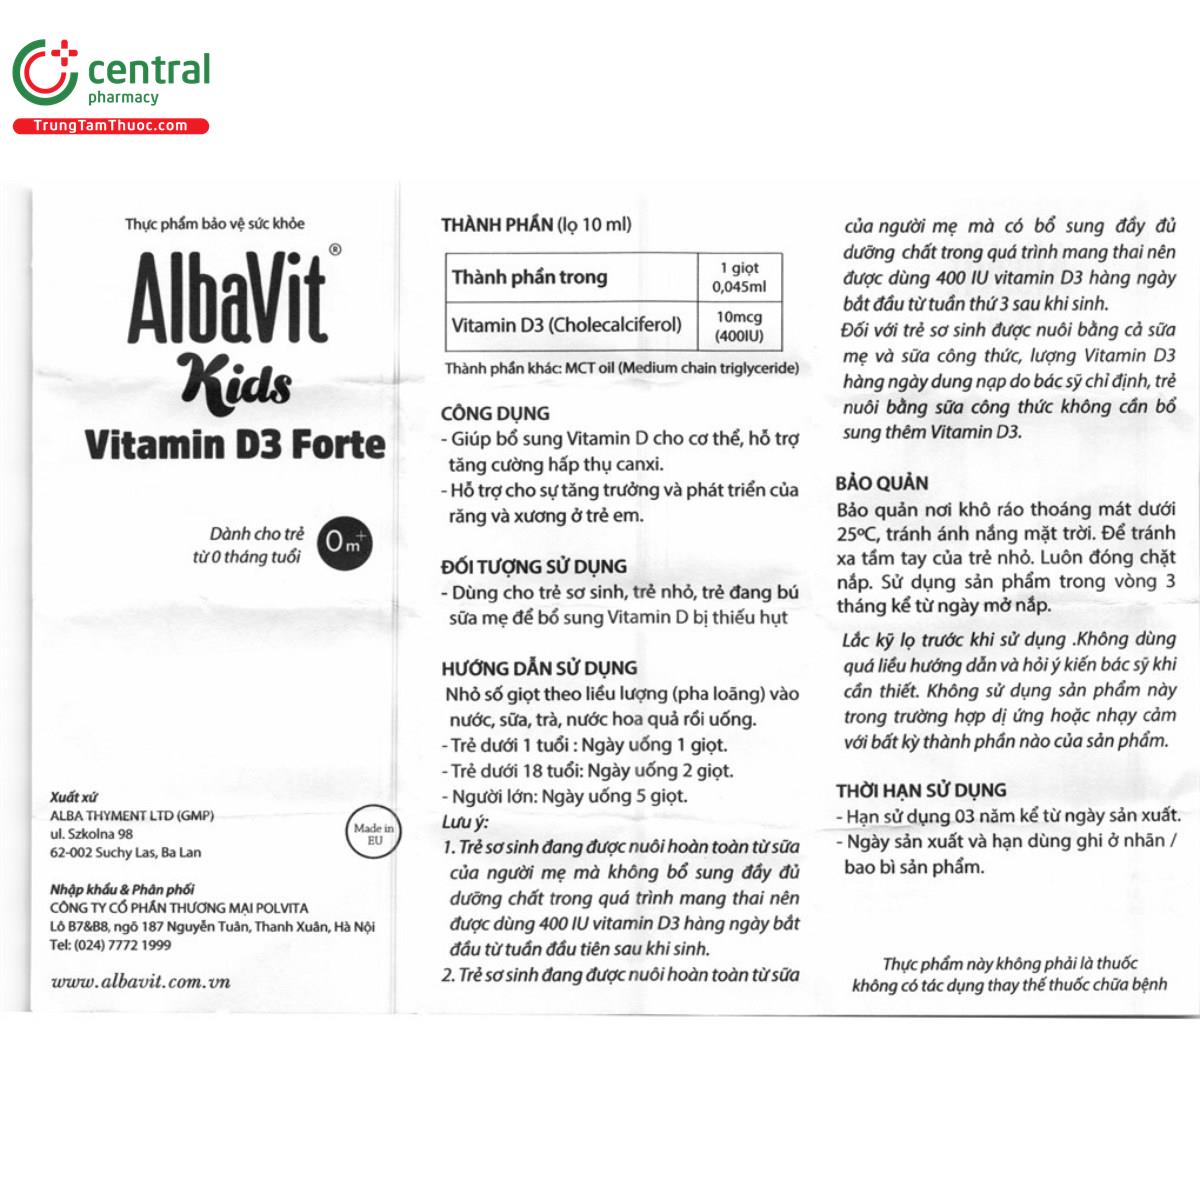 albavit kids vitamin d3 forte 9 P6355